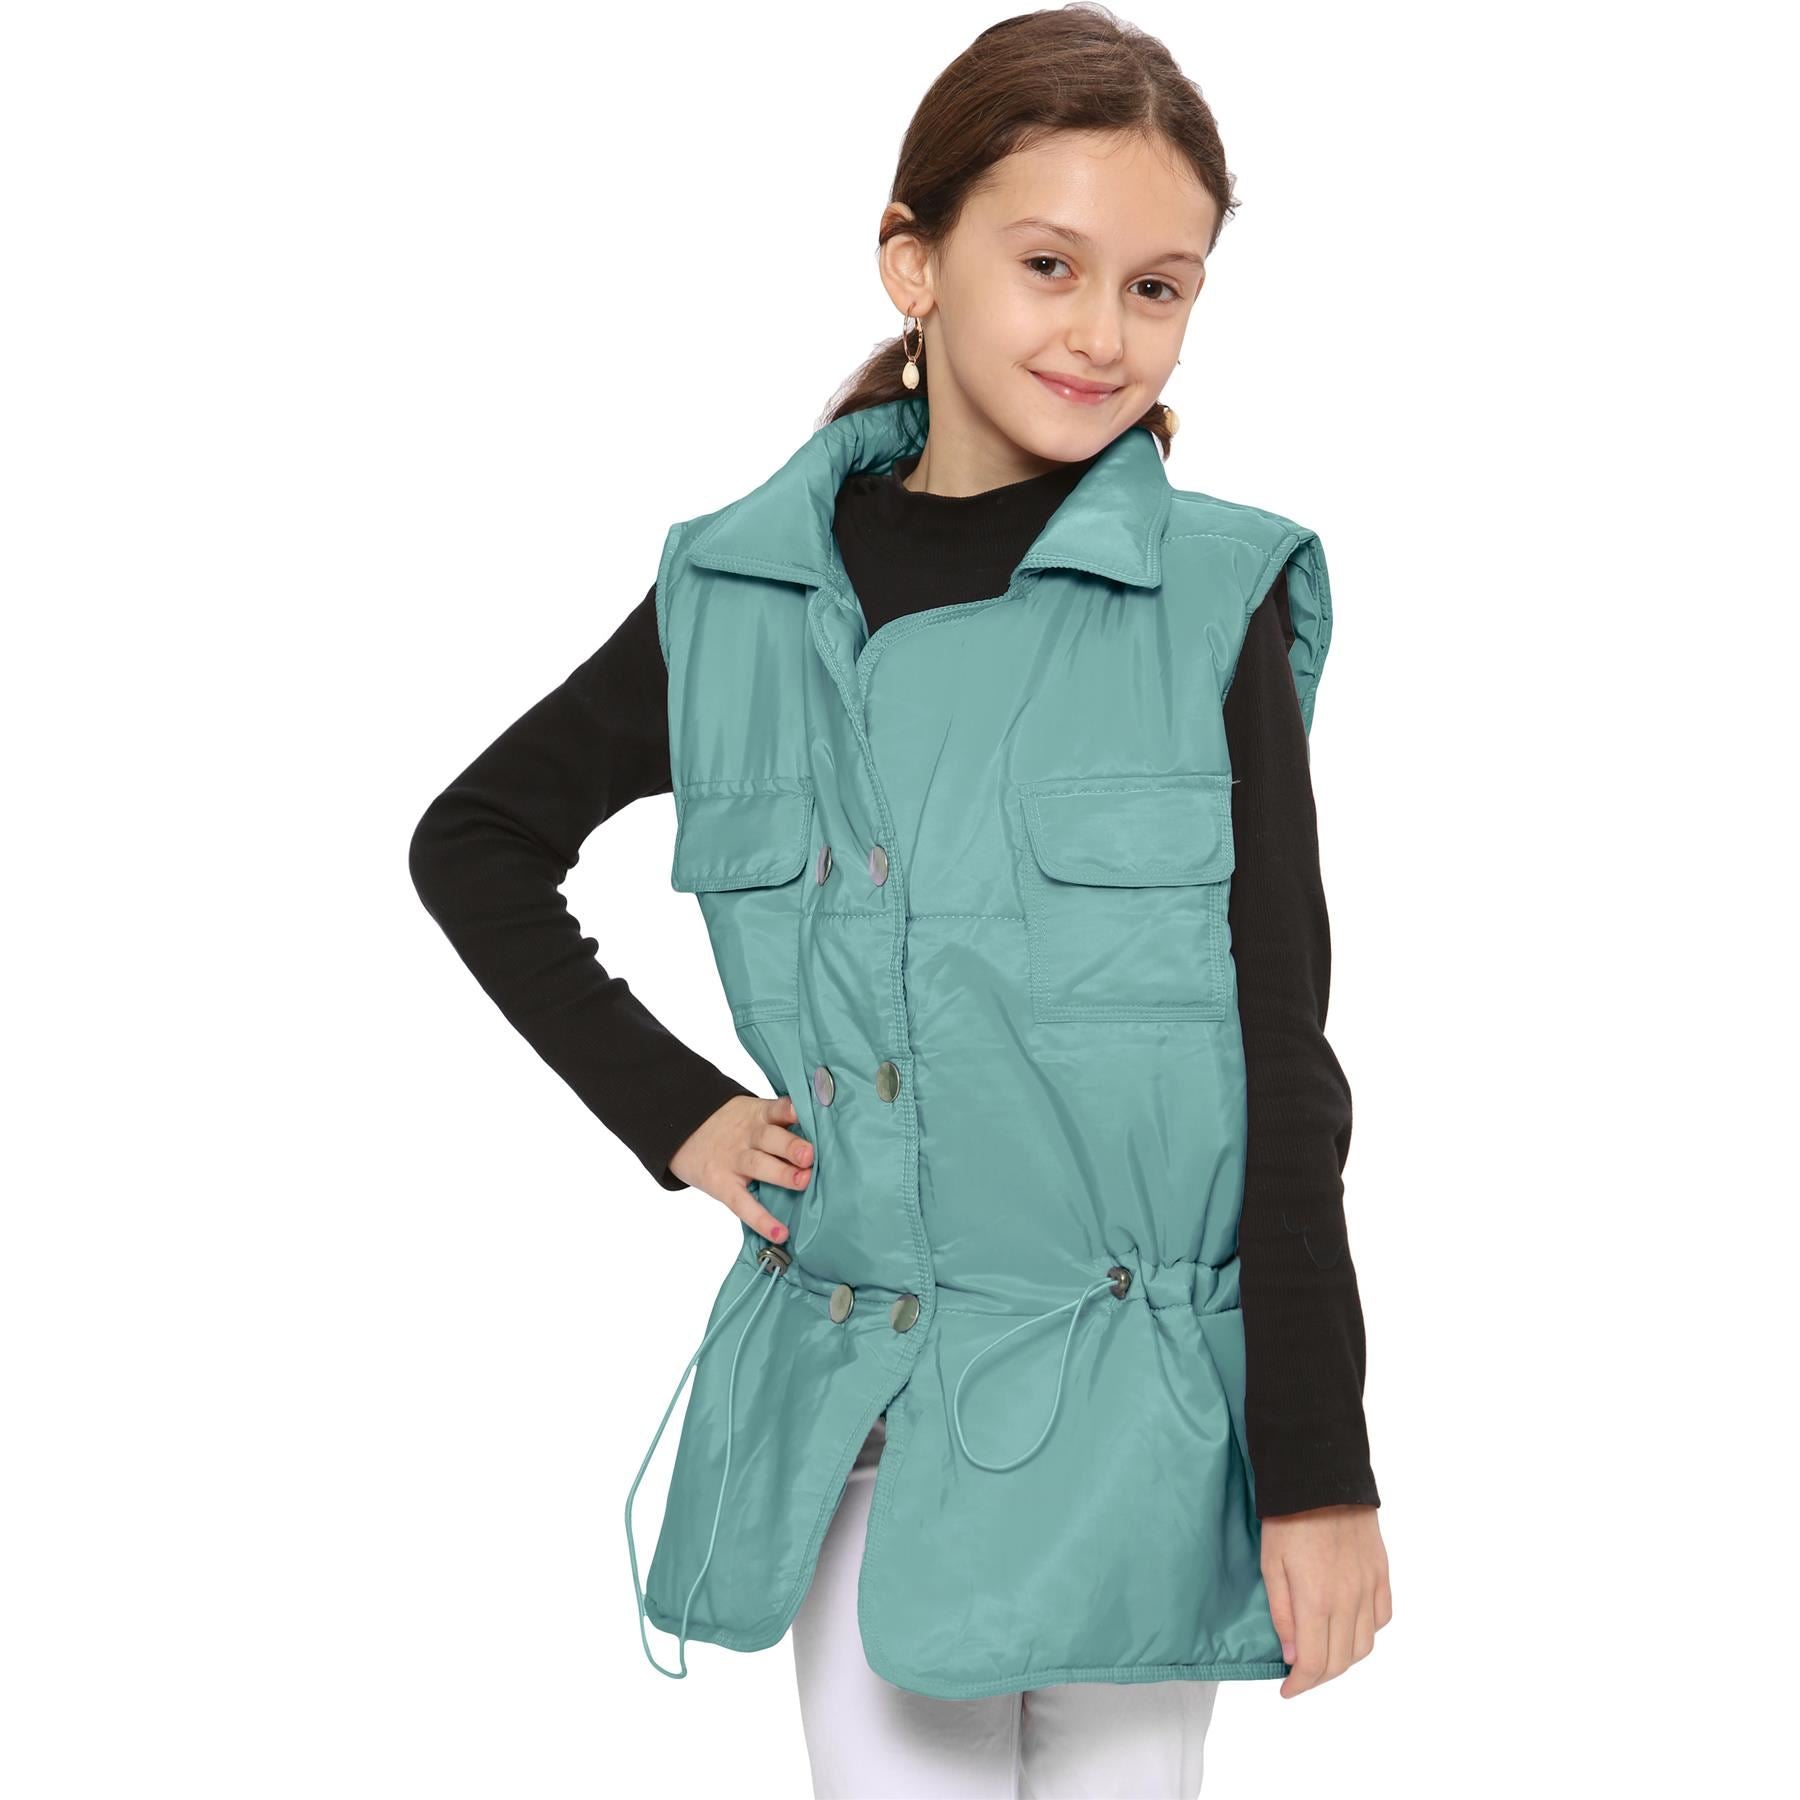 Kids Girls Mint Oversized Style Sleeveless Jacket